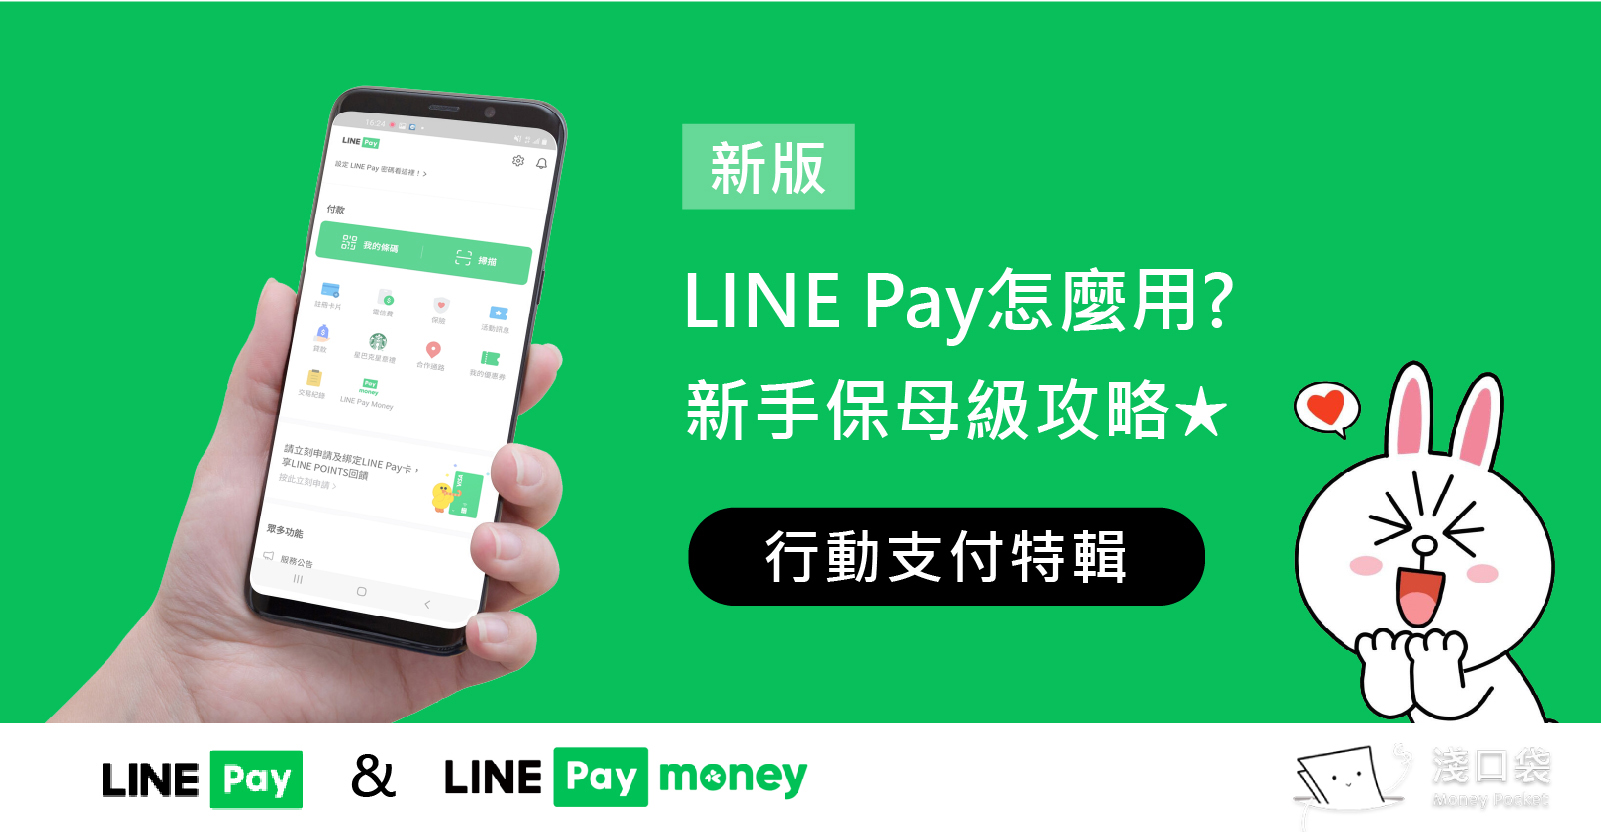 新版LINE Pay& LINE Pay Money新手保母級攻略 ◍ 行動支付系列 (1 )